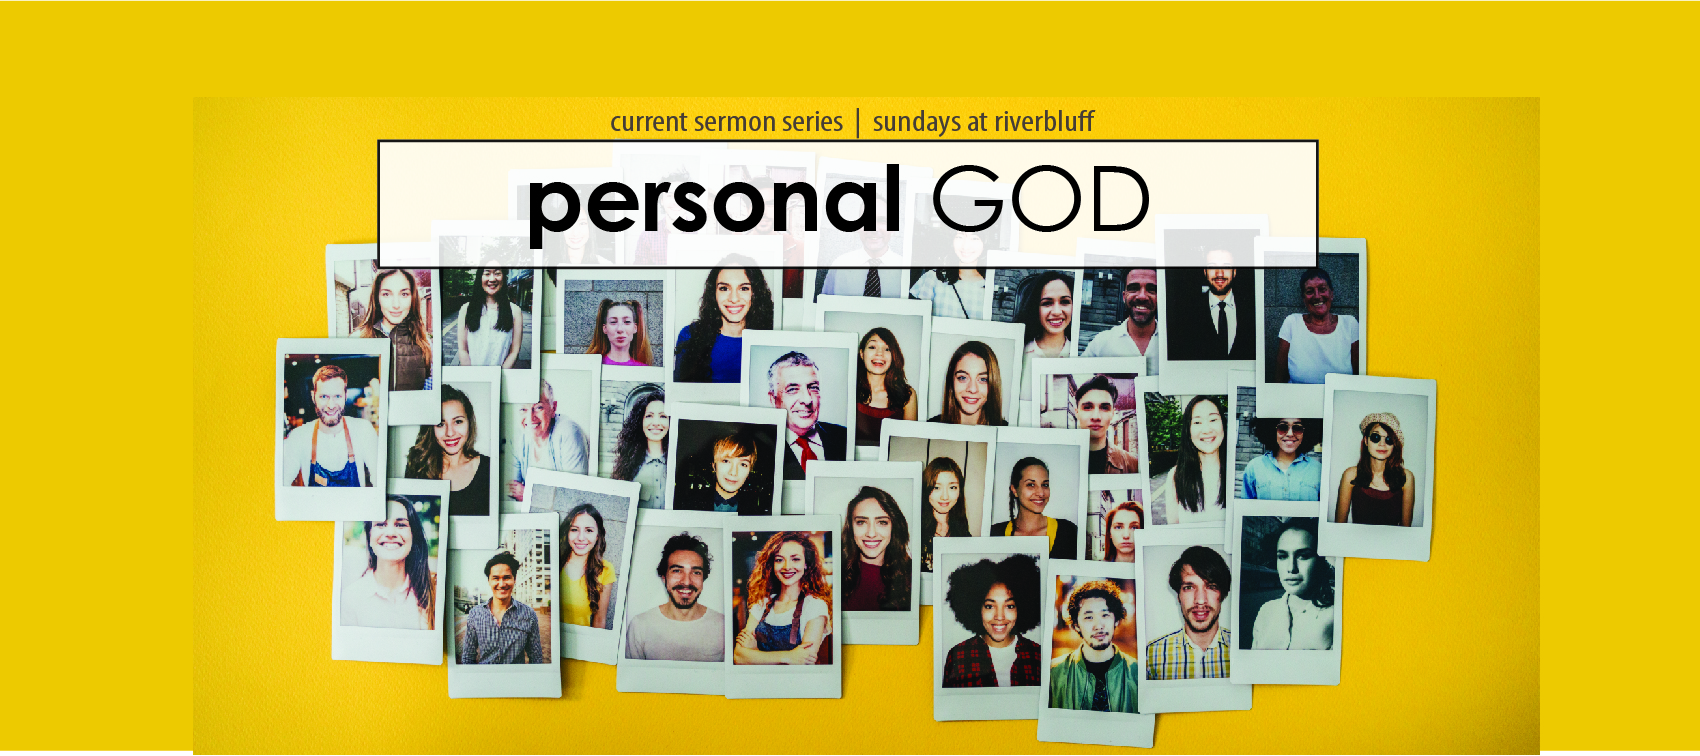 PERSONAL GOD sermon graphic